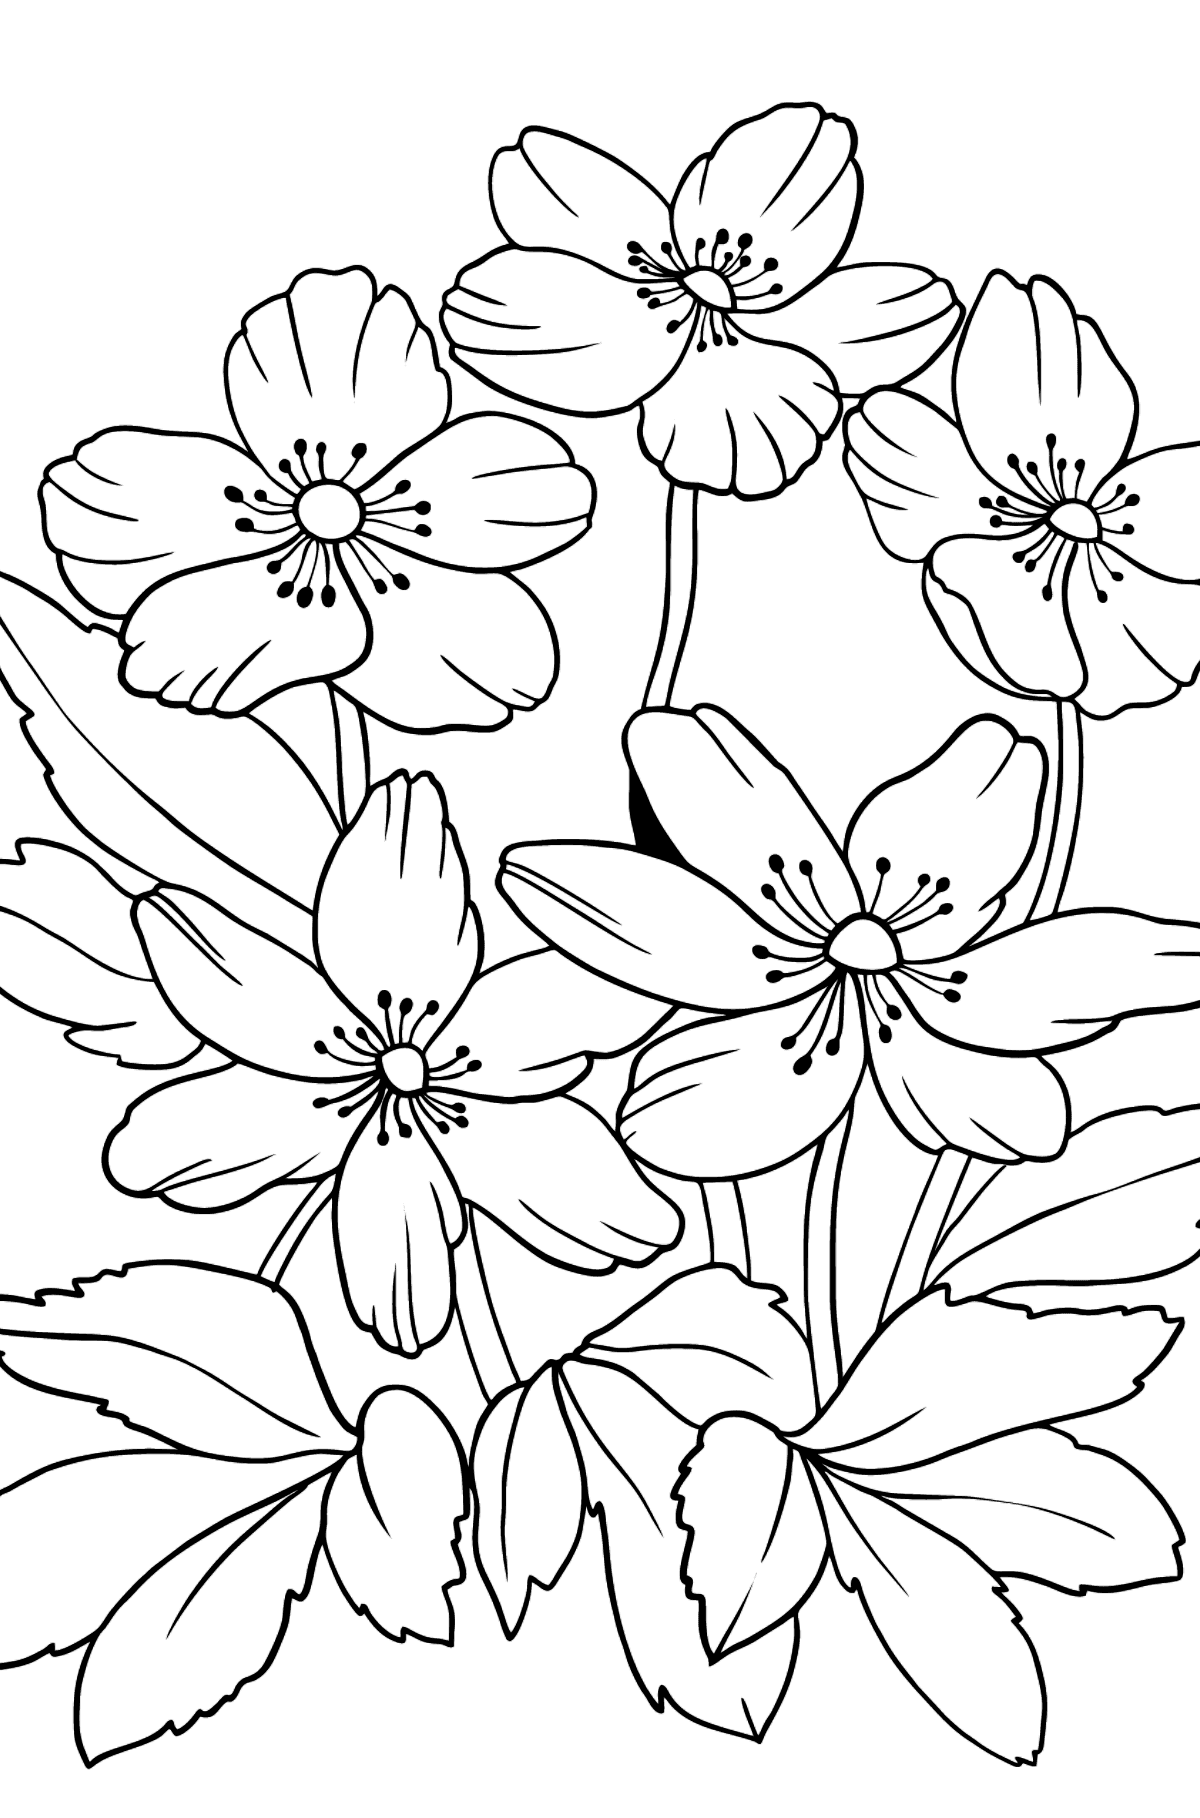 Tegning til fargelegging blomster Anemone (vanskelig) - Tegninger til fargelegging for barn